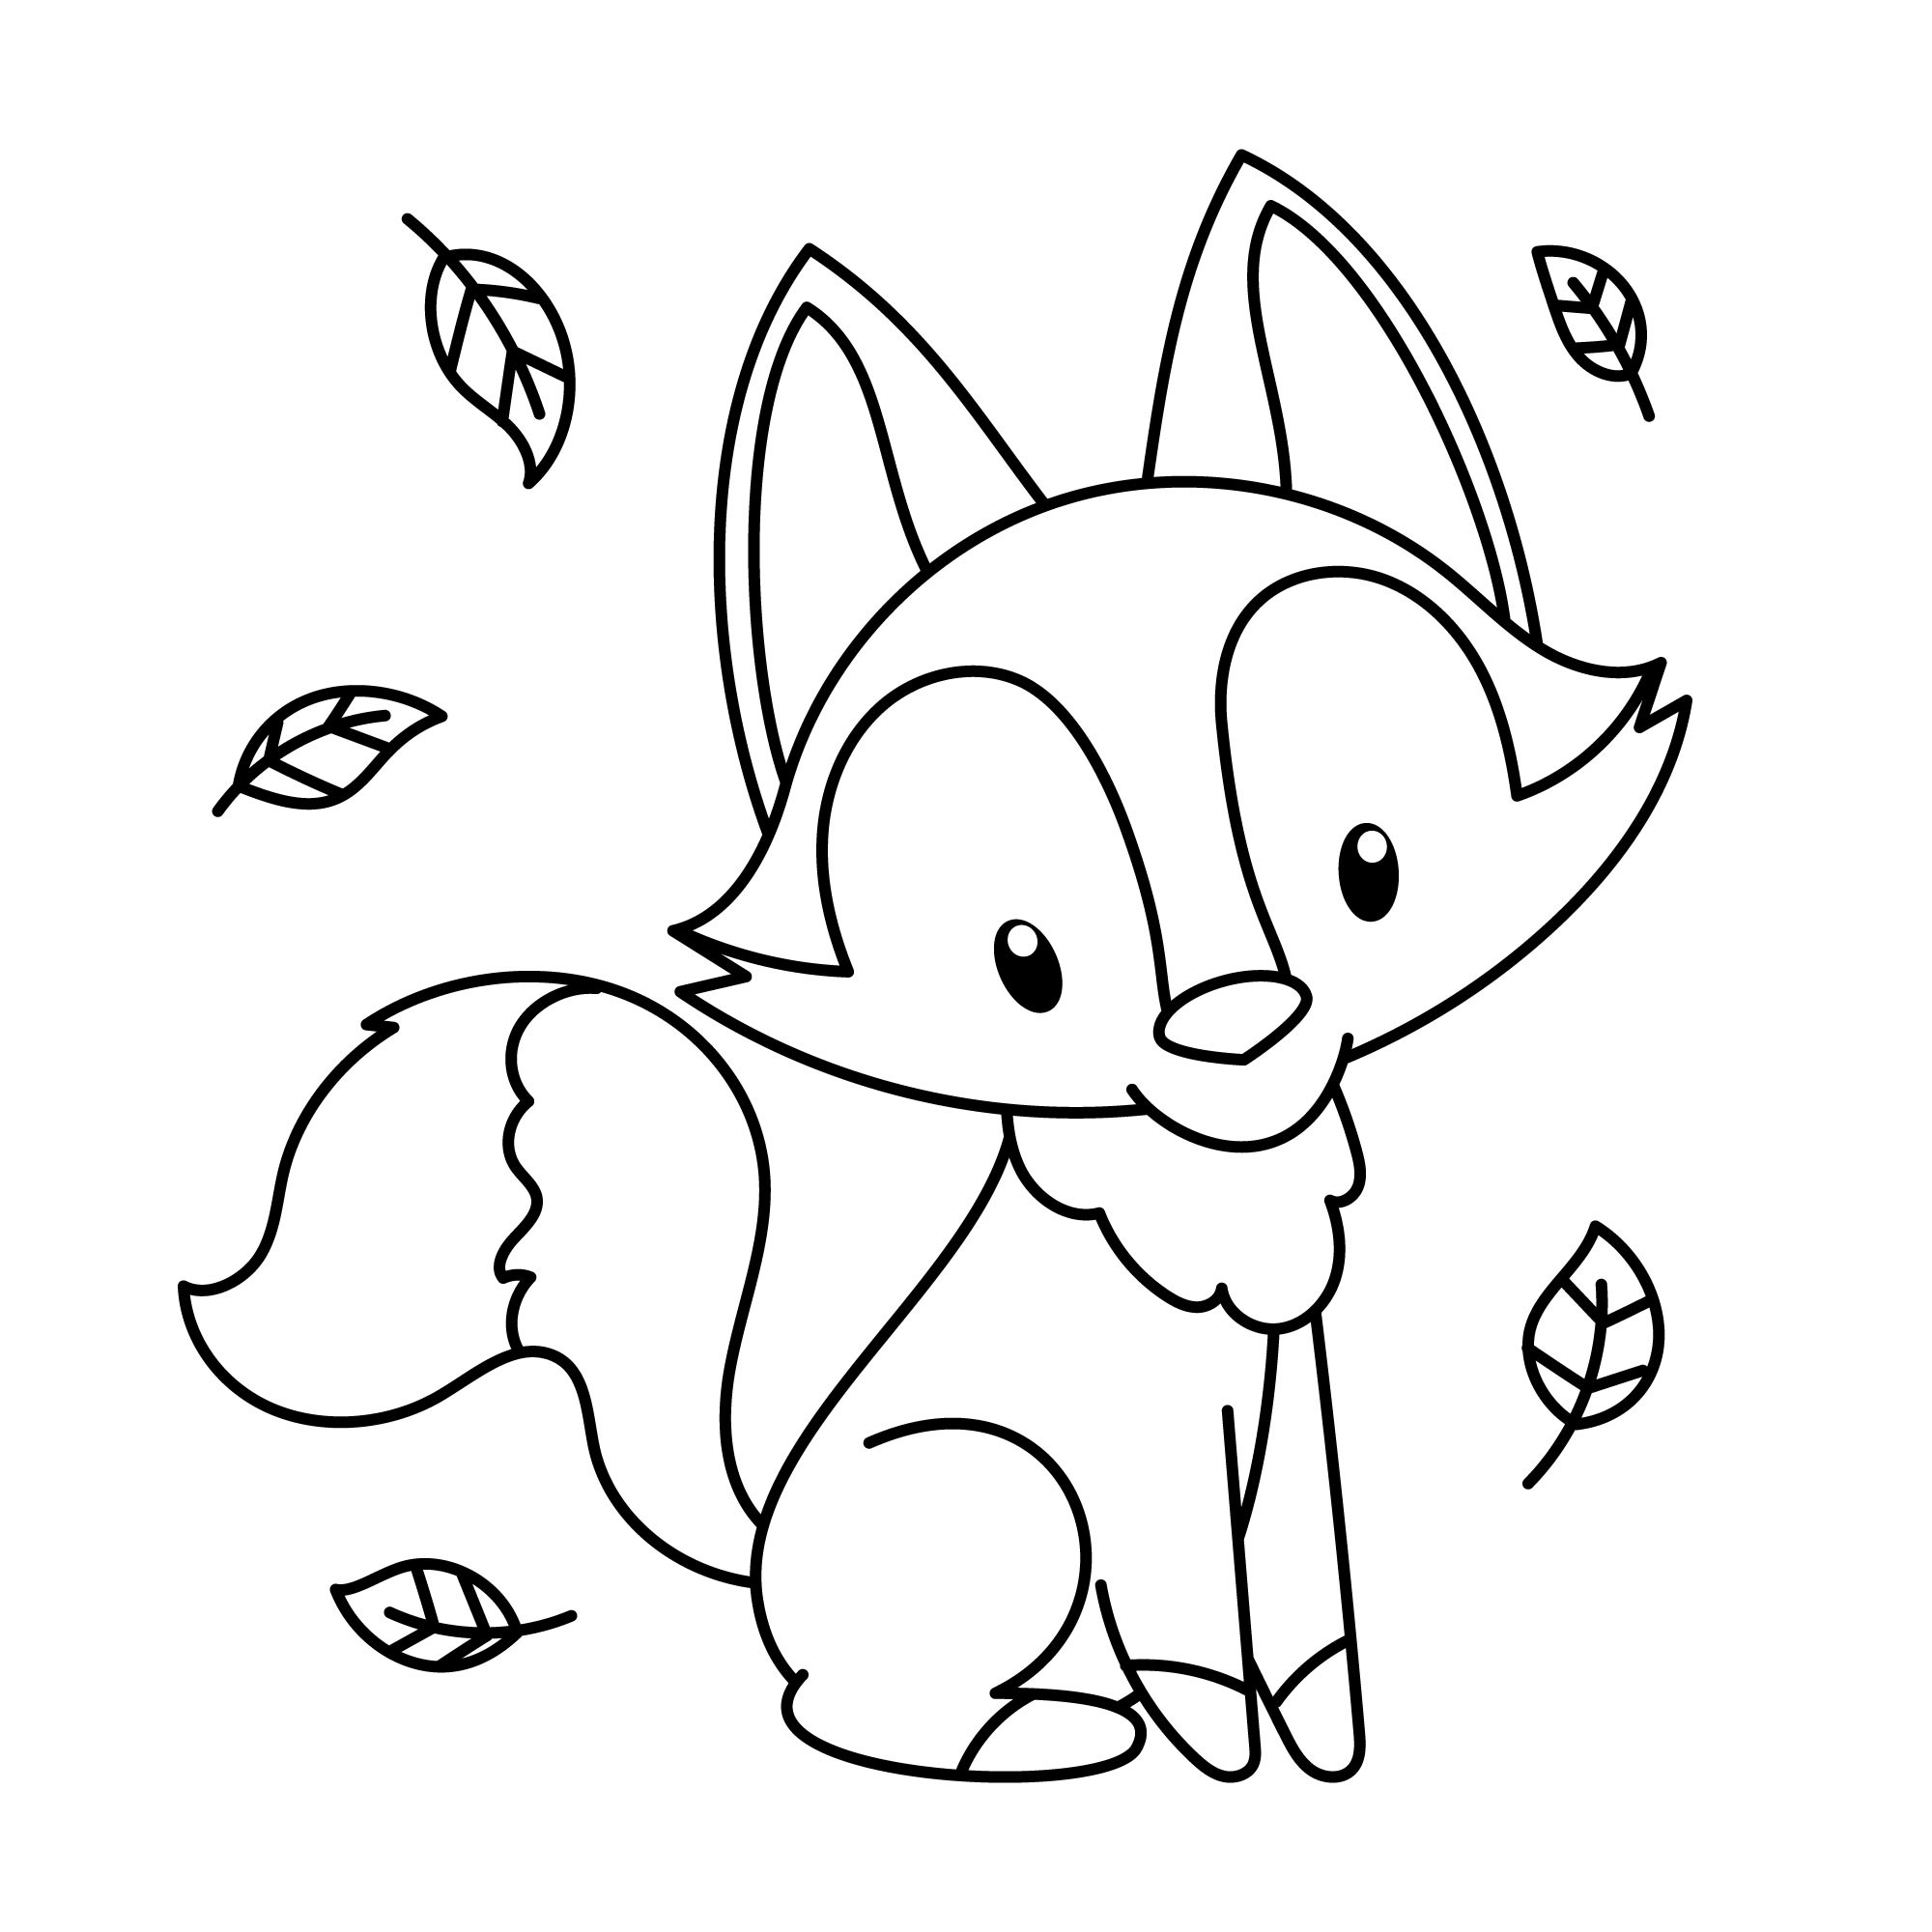 Раскраска для детей: маленькая лисичка с листиками